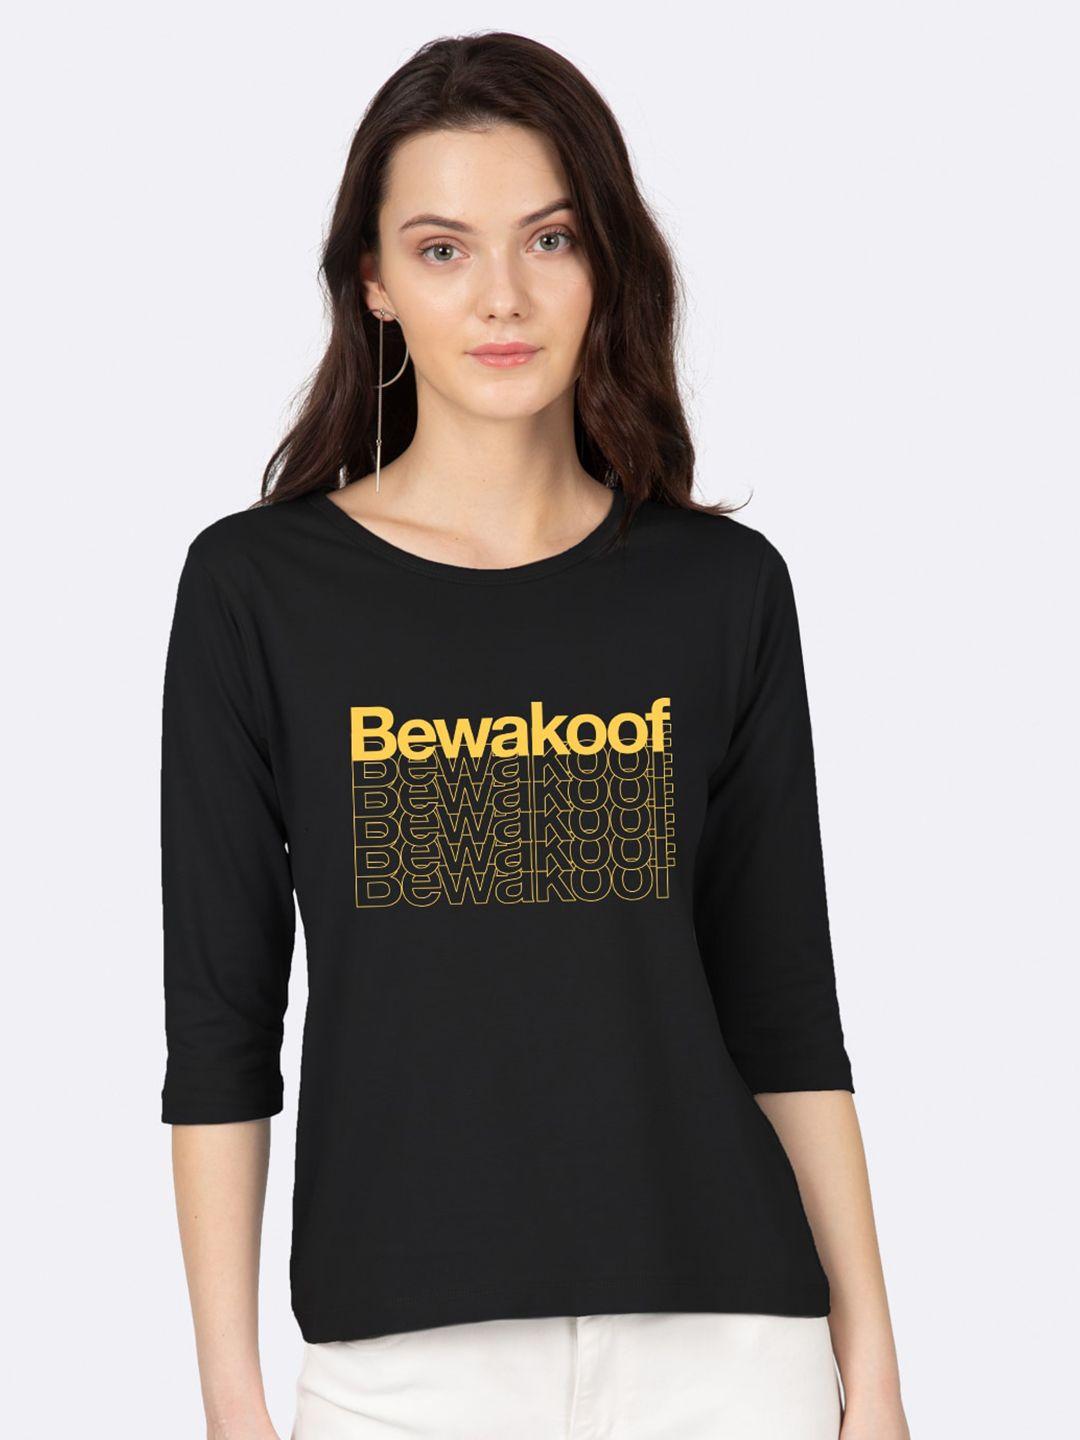 bewakoof women black & yellow brand logo printed slim fit t-shirt